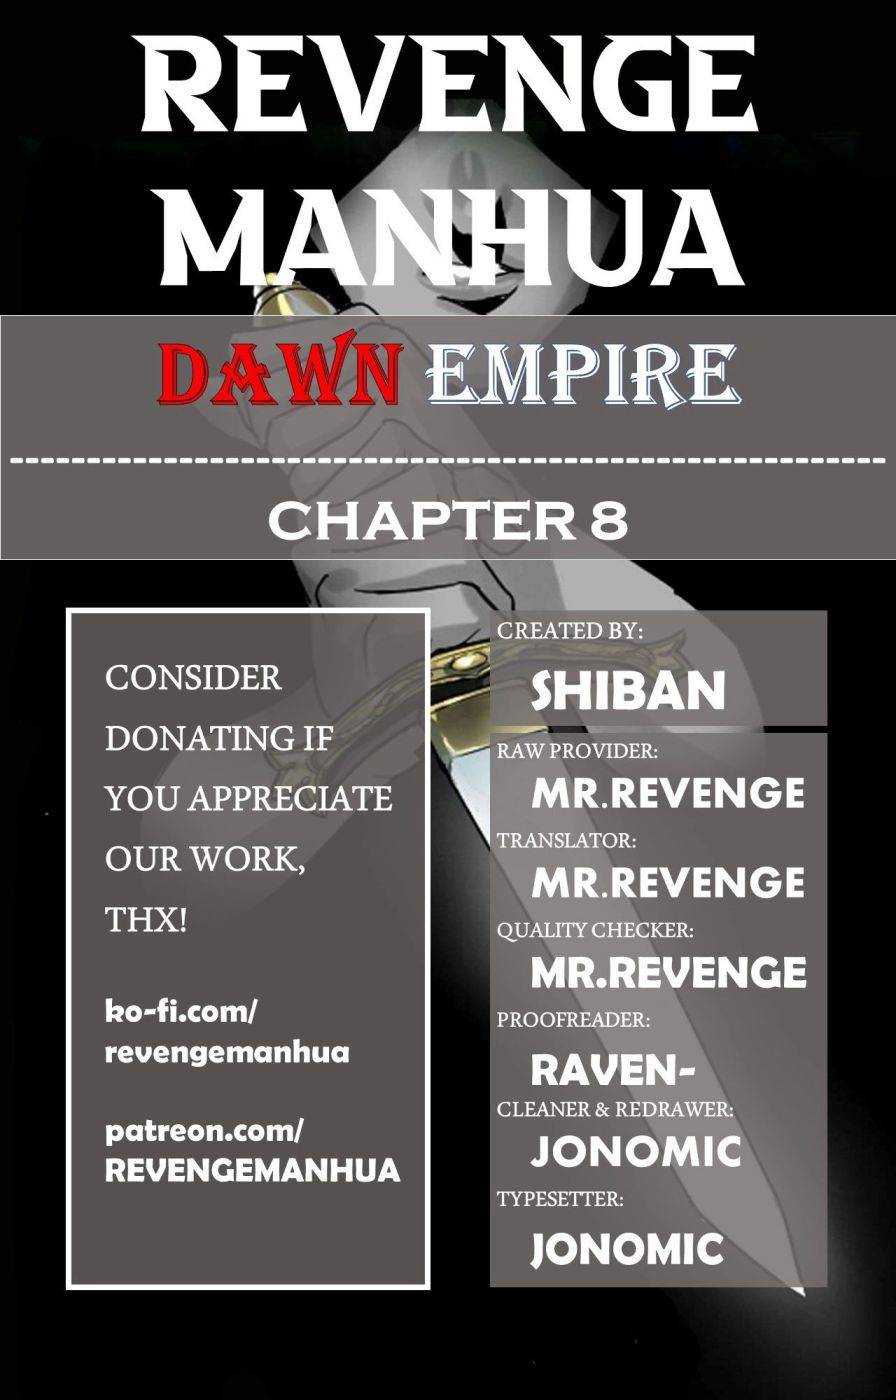 Dawn Empire - Page 1